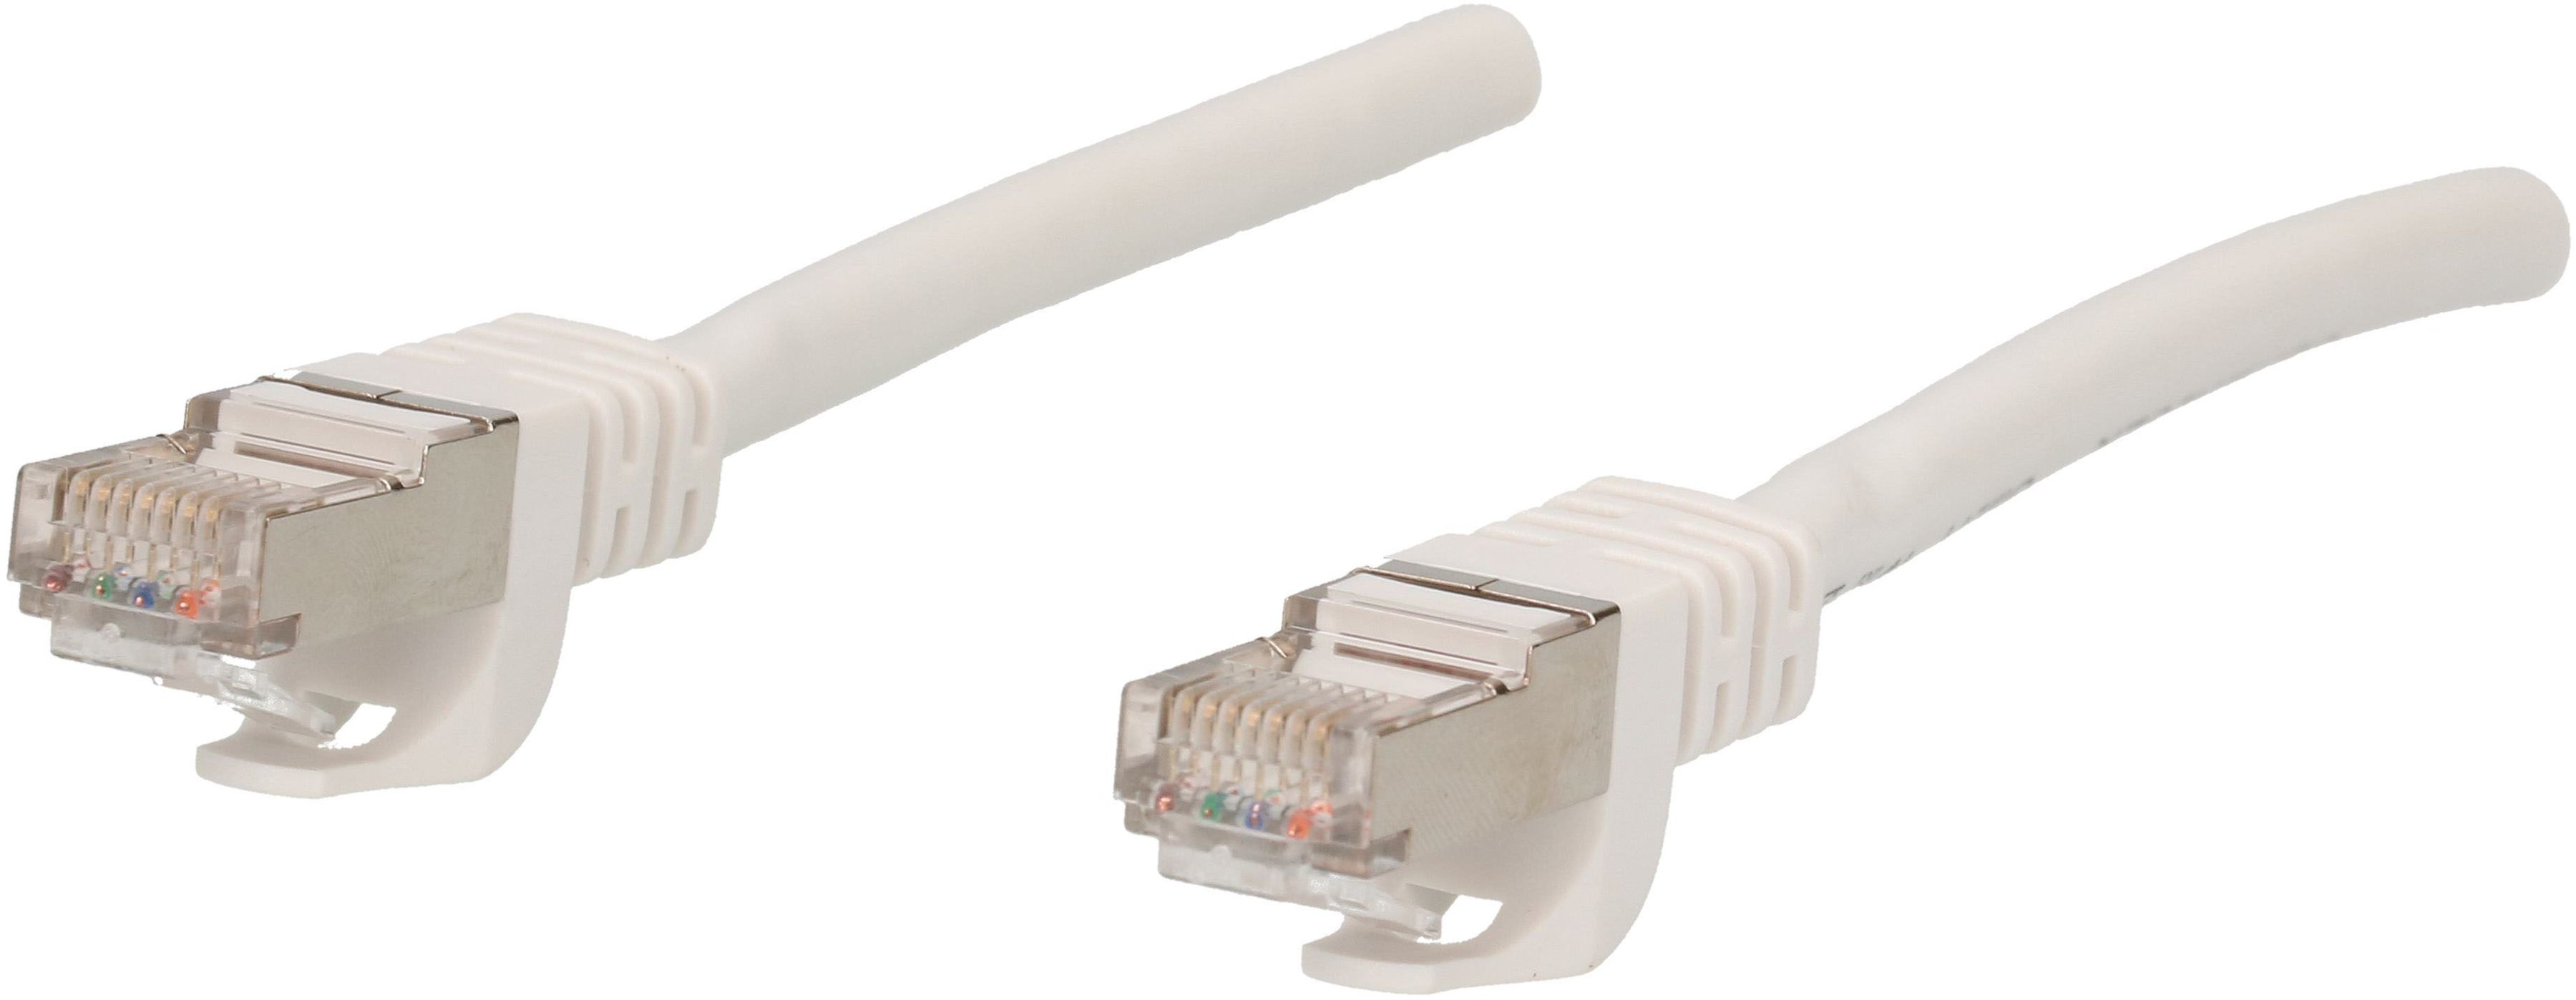 Câble réseau Cat. 6 S/FTP 5m blanc